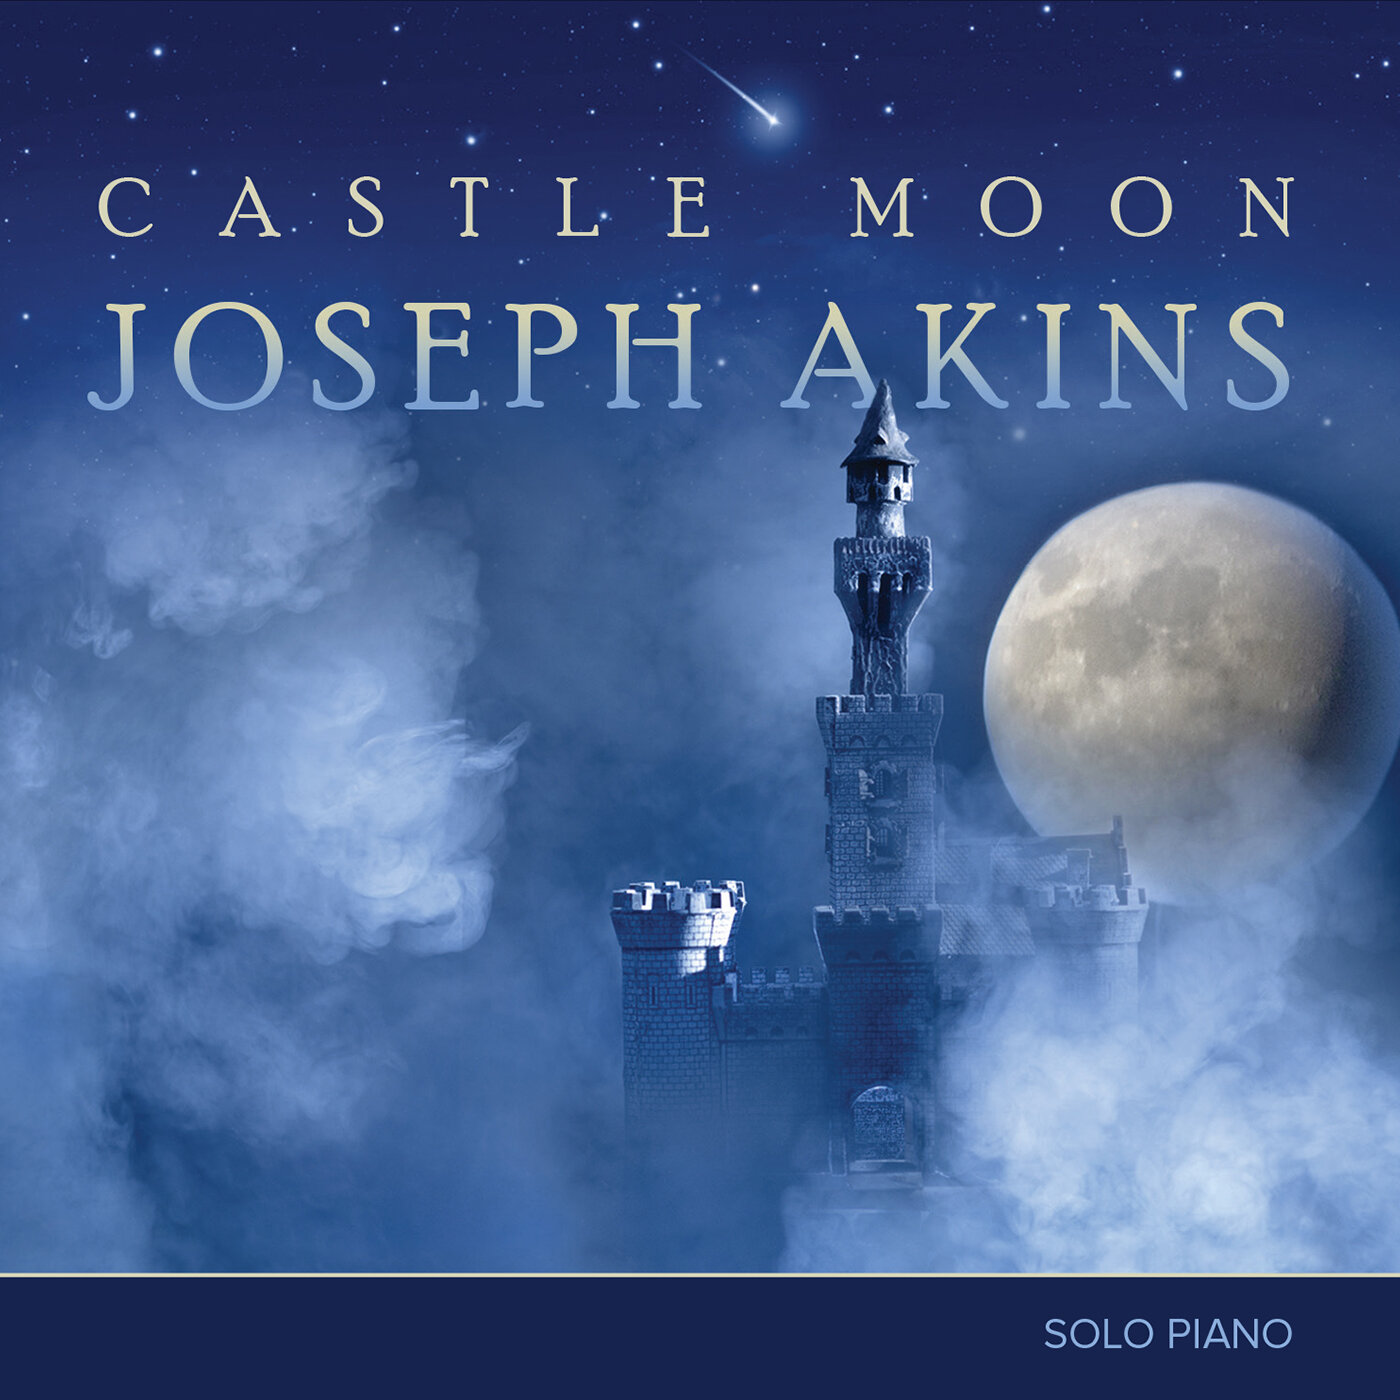 Castle Moon CD — Joseph Akins